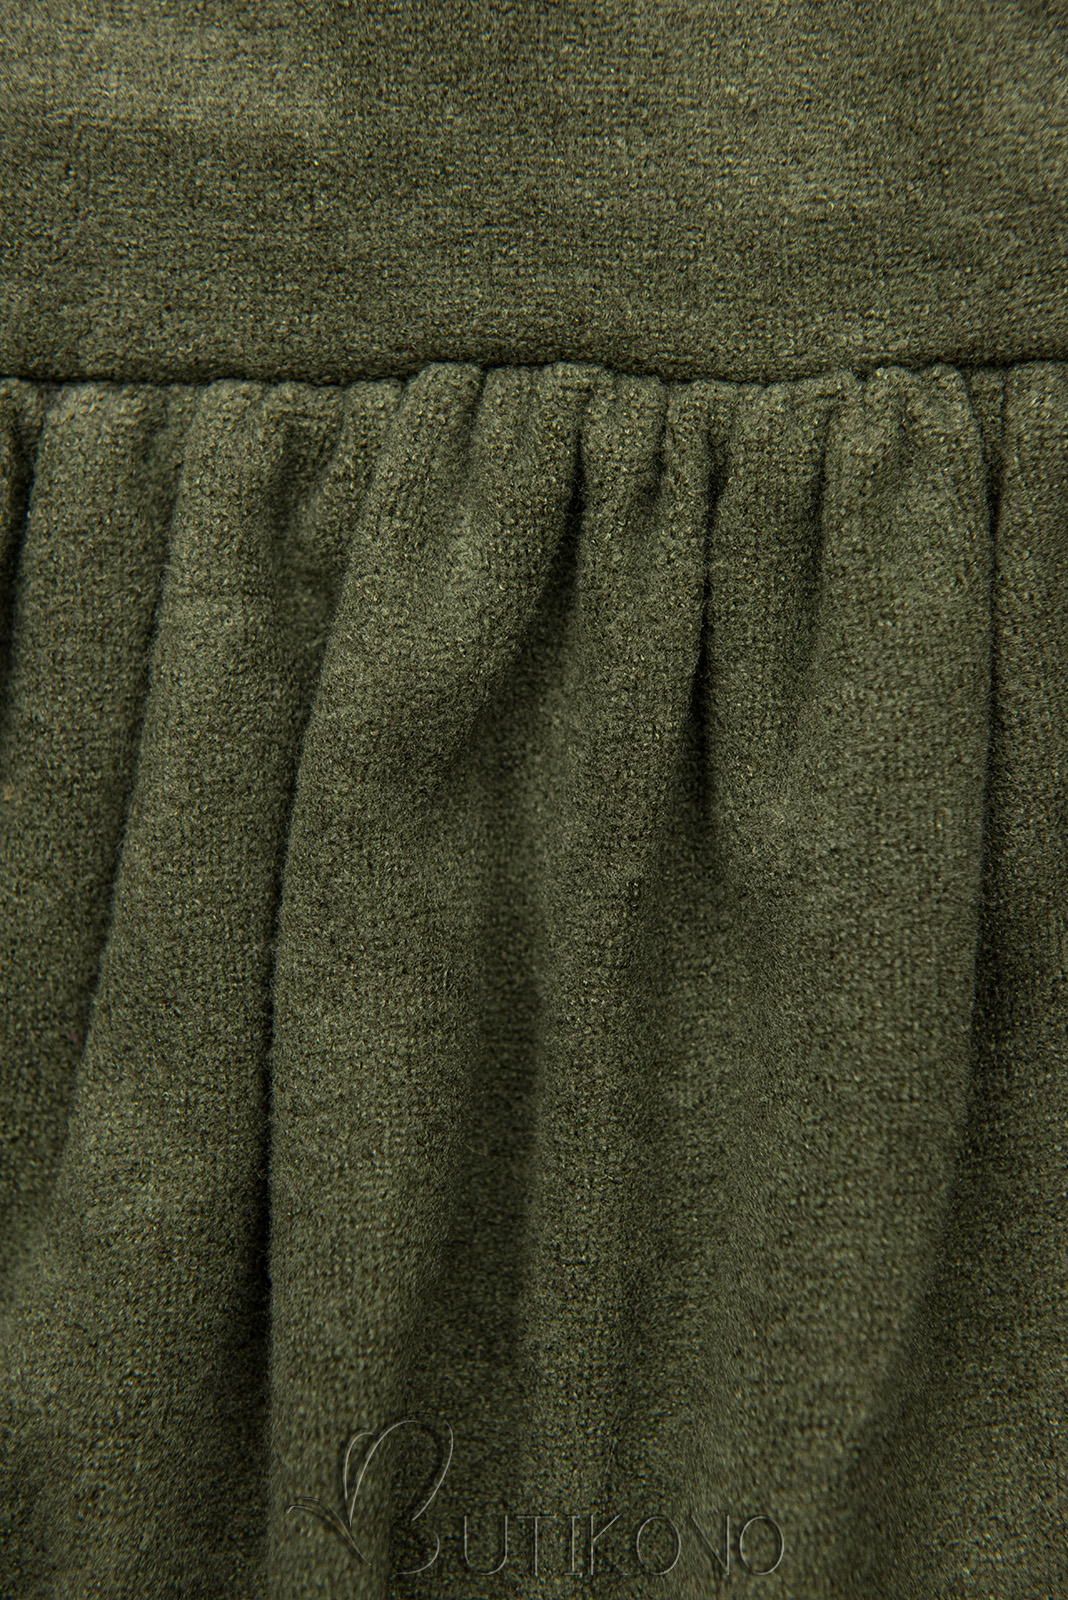 Army zelené krátke šaty s čipkou